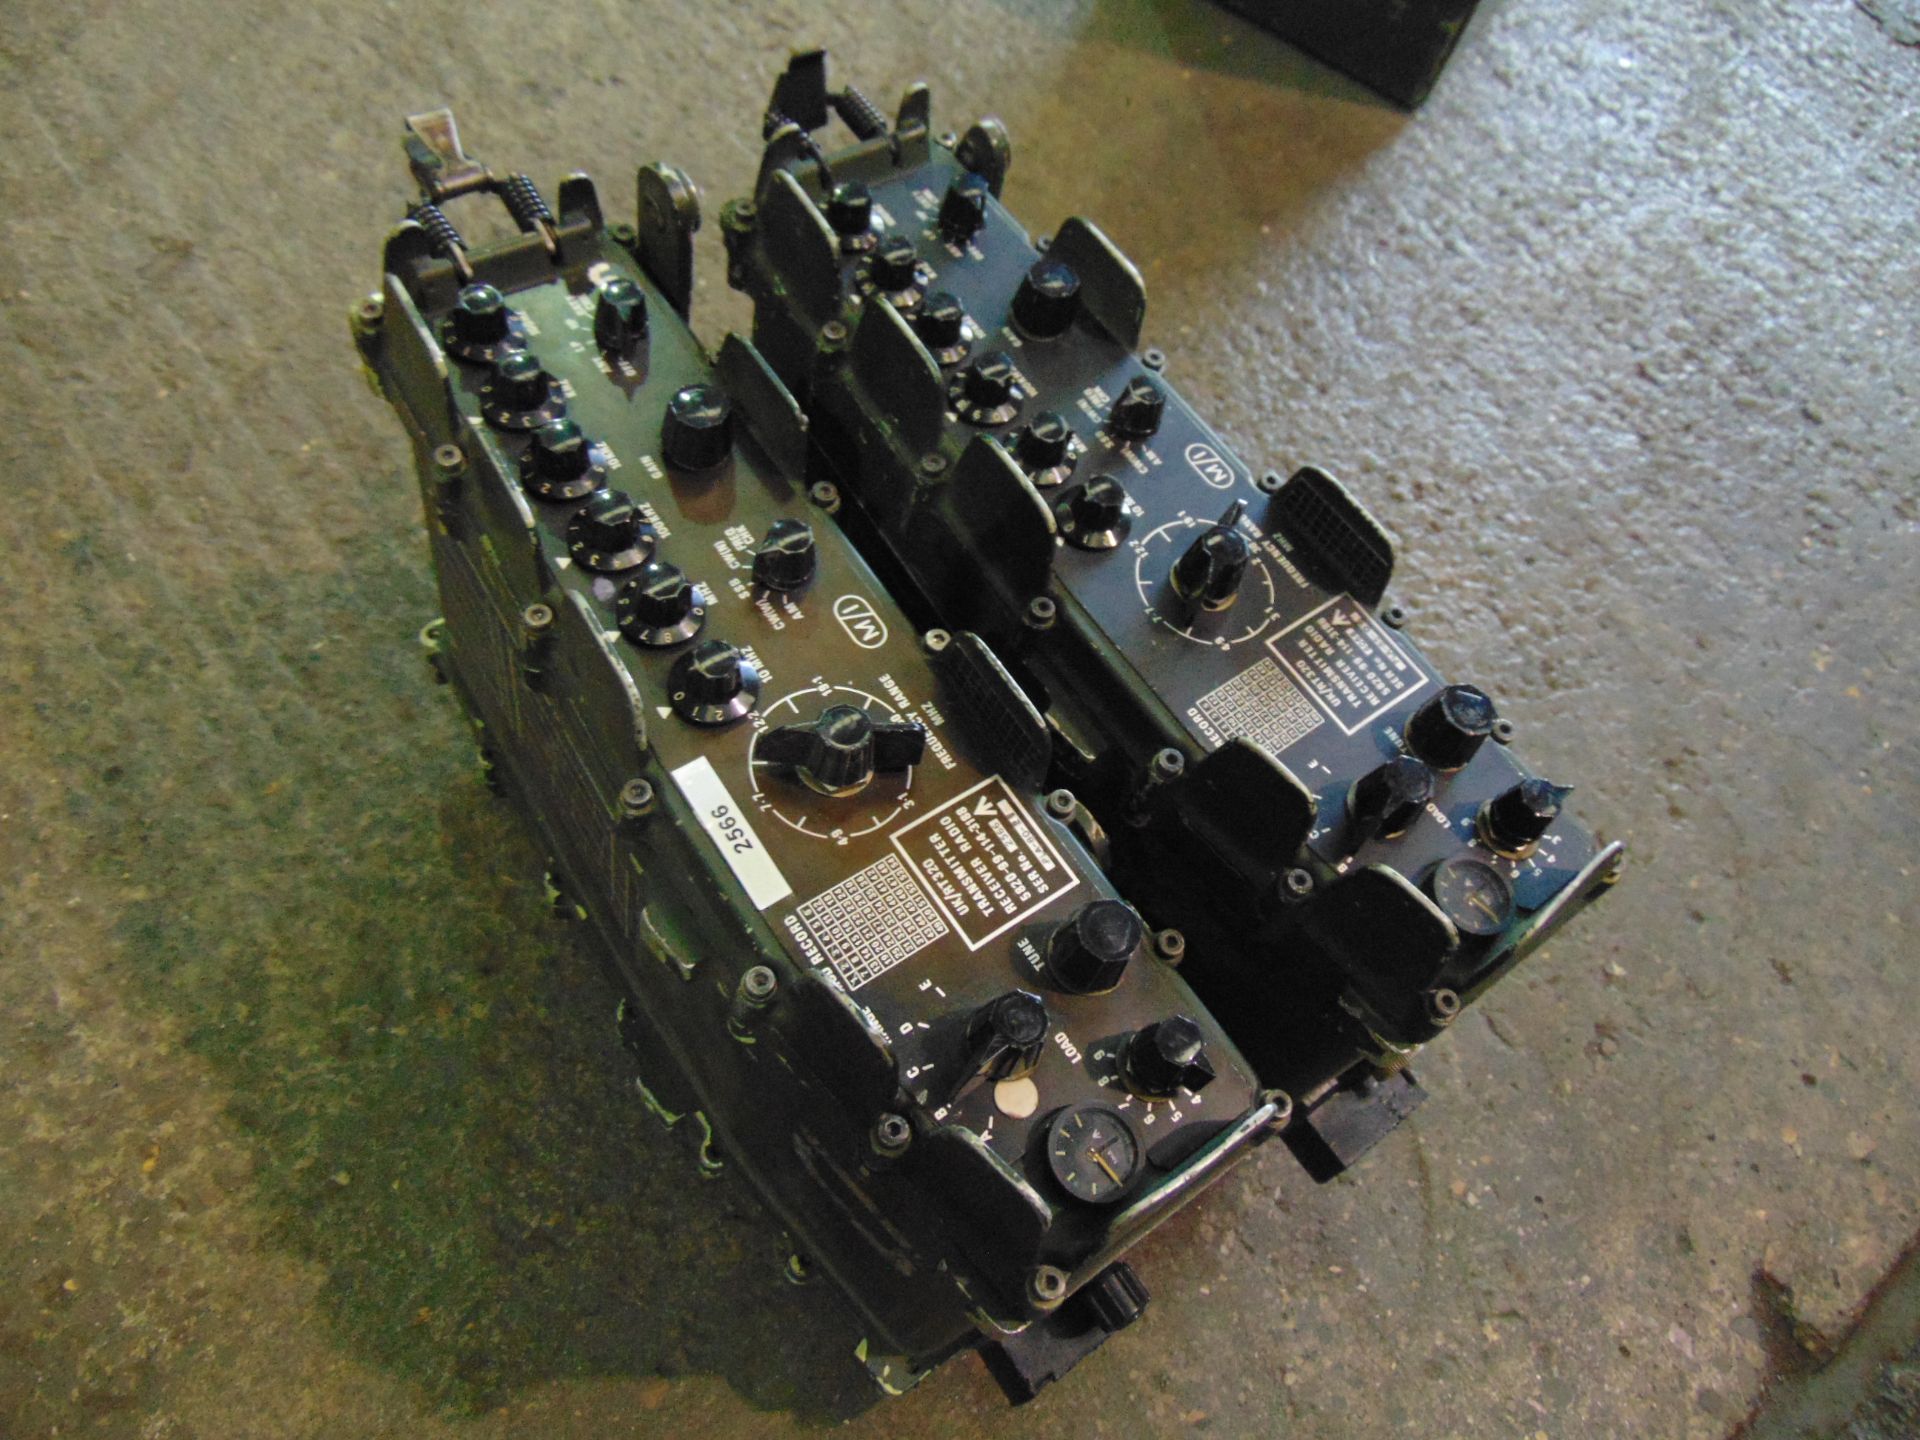 2 x Clansman UK RT 320 Transmitter Recievers HF 2-30 MHz - Image 2 of 4